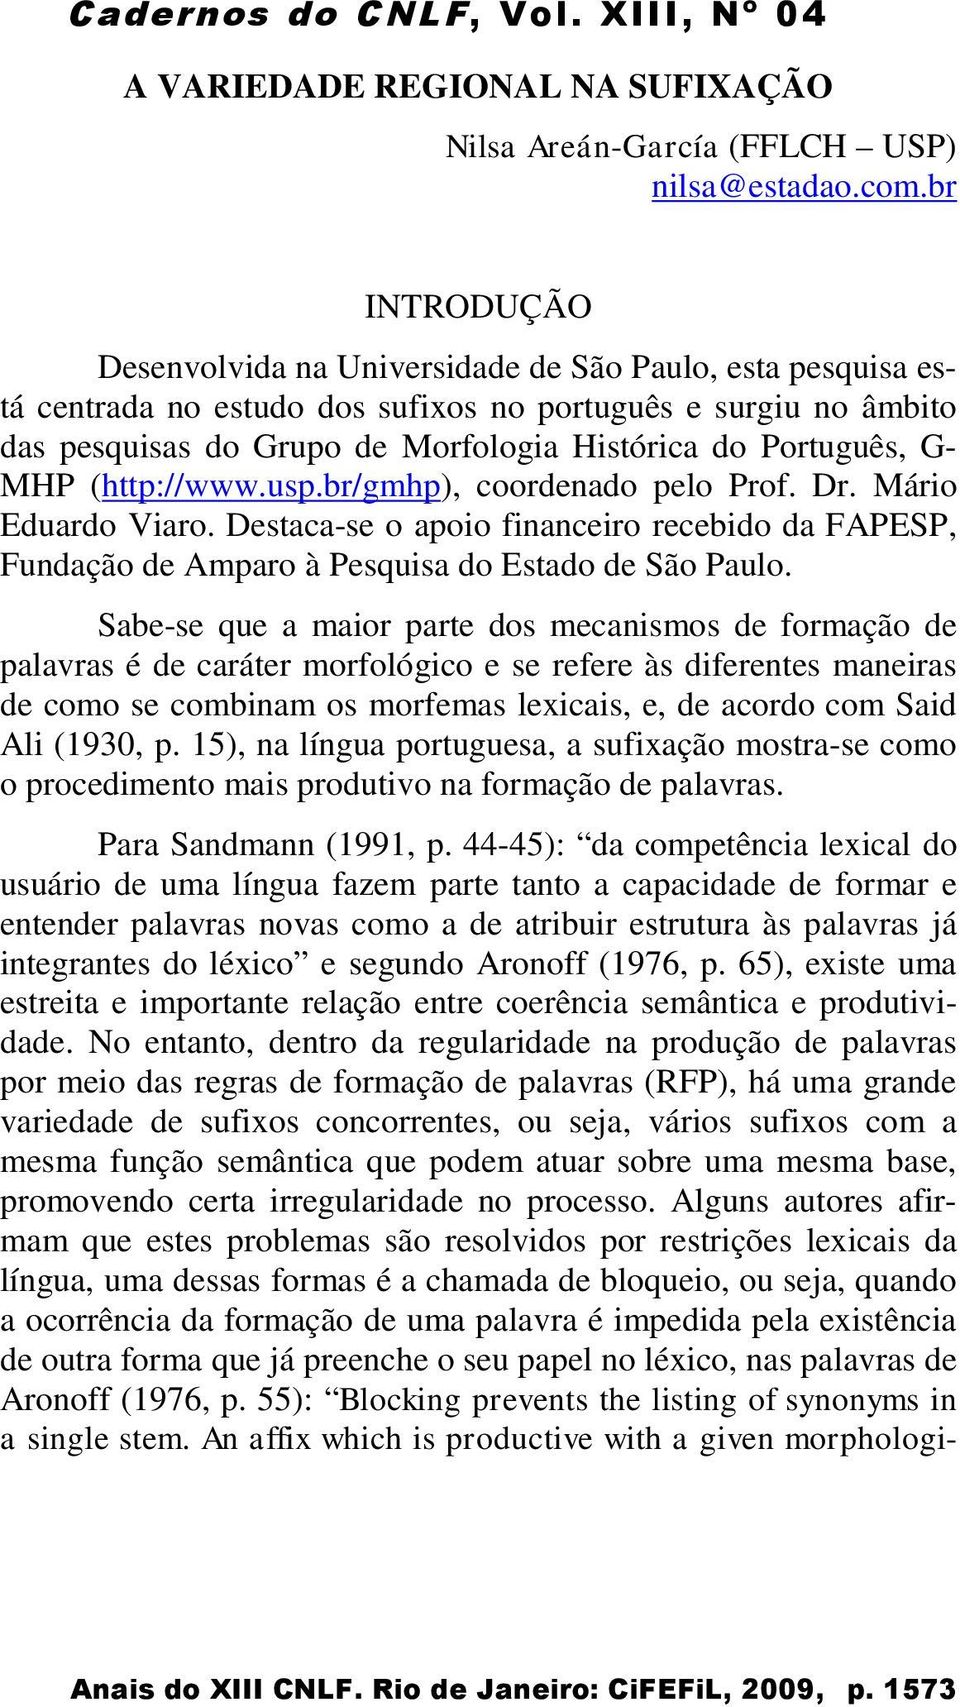 G- MHP (http://www.usp.br/gmhp), coordenado pelo Prof. Dr. Mário Eduardo Viaro. Destaca-se o apoio financeiro recebido da FAPESP, Fundação de Amparo à Pesquisa do Estado de São Paulo.